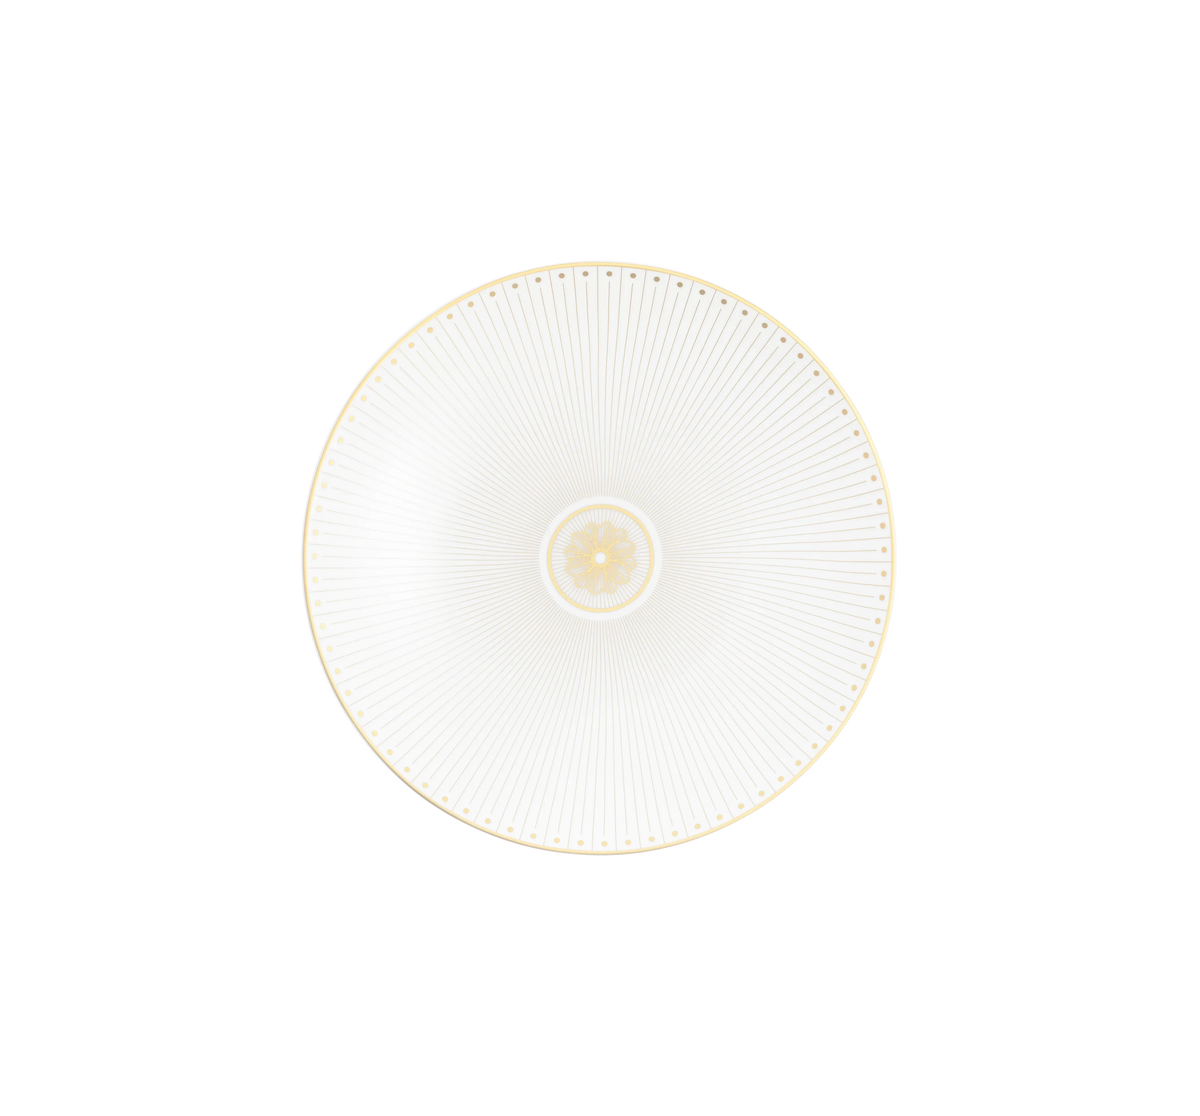 Malmaison Imperiale Porcelain Dessert plate